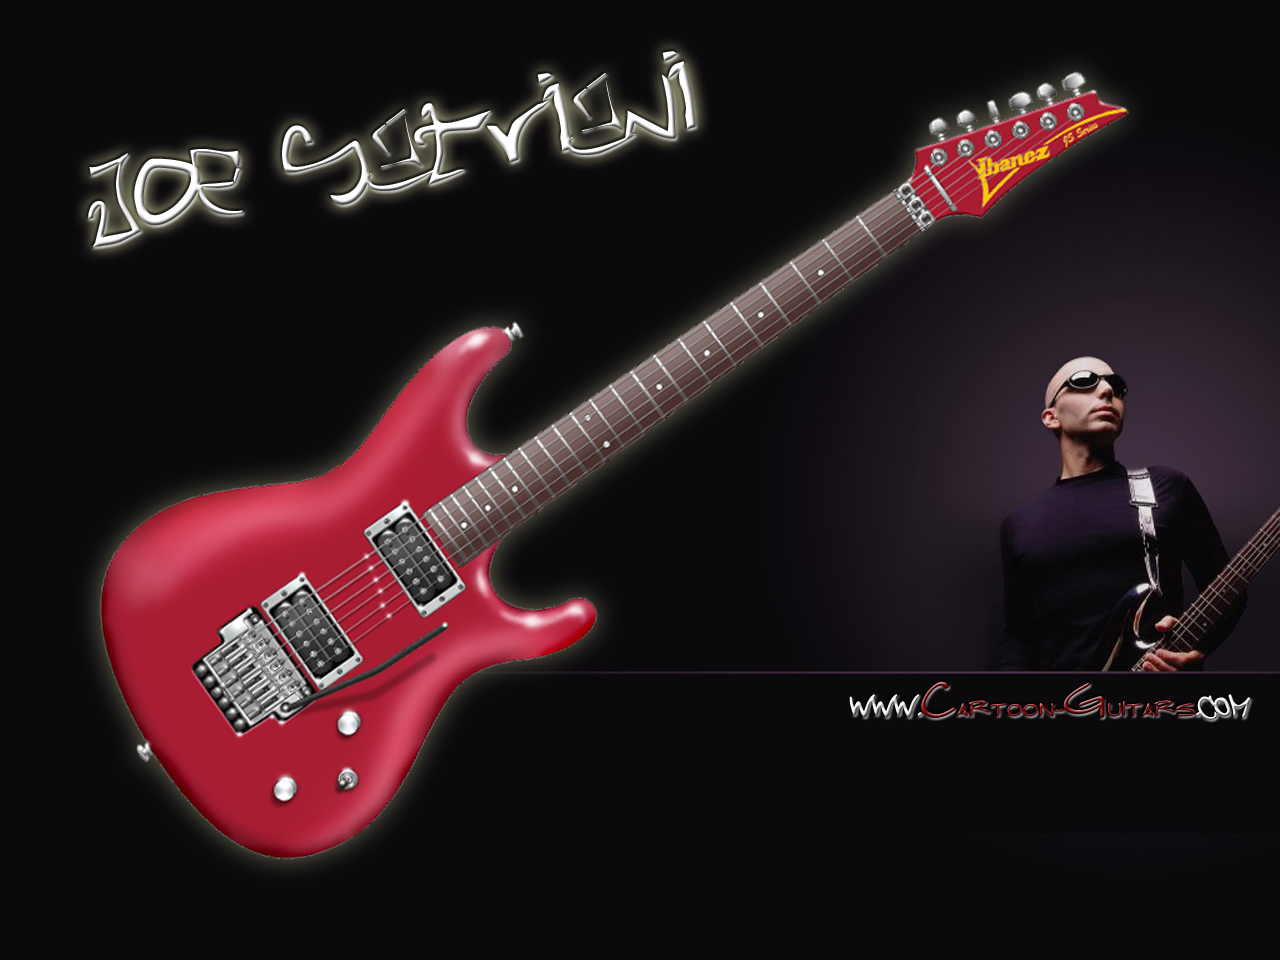 ジョー・サトリアーニの壁紙,ギター,楽器,ベースギター,エレキギター,撥弦楽器